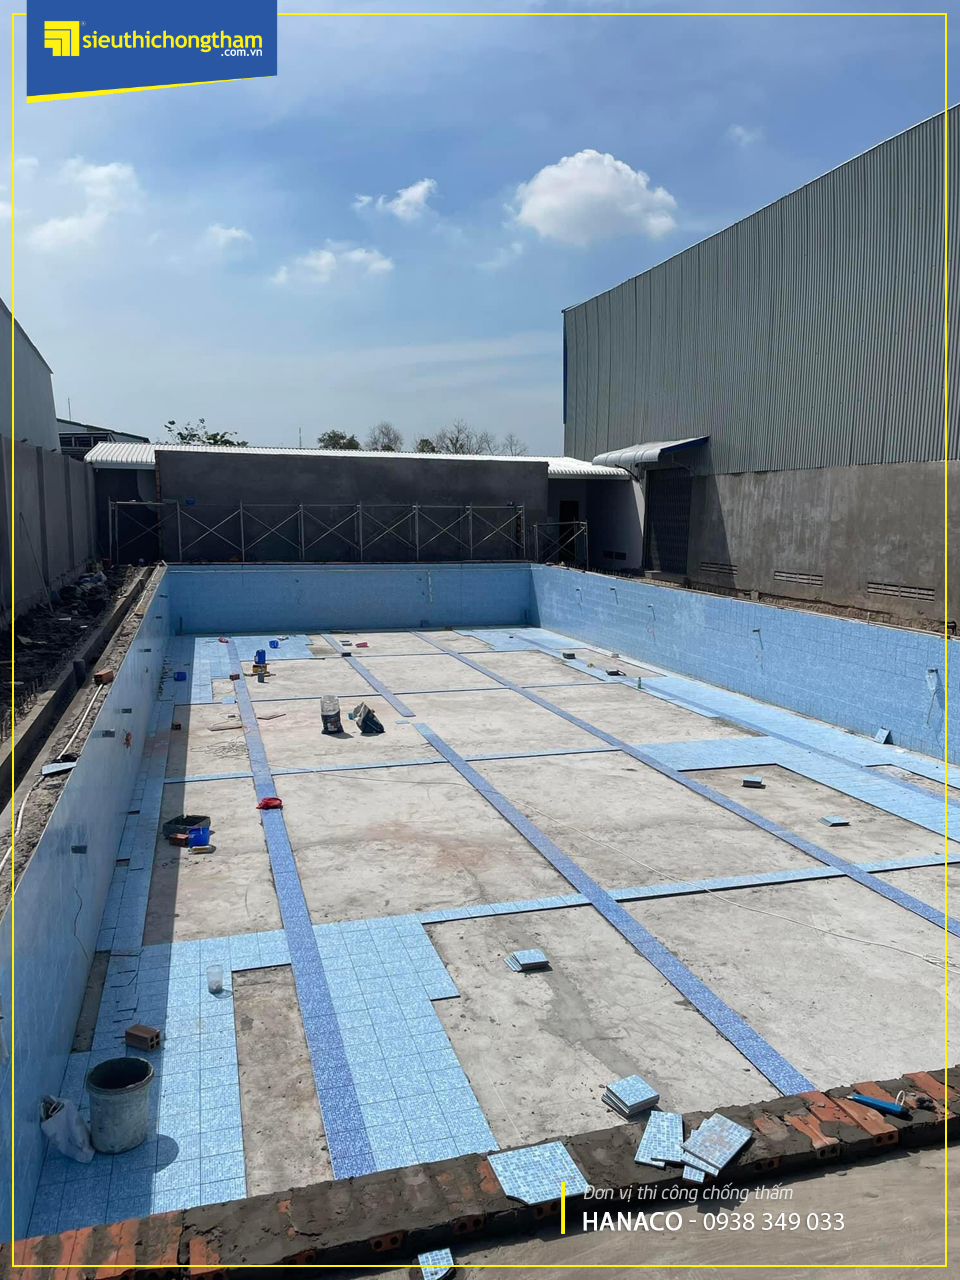 "Chống thấm hồ bơi trên sân thượng" và tầm quan trọng của việc chống thấm trong xây dựng hồ bơi trên sân thượng-2